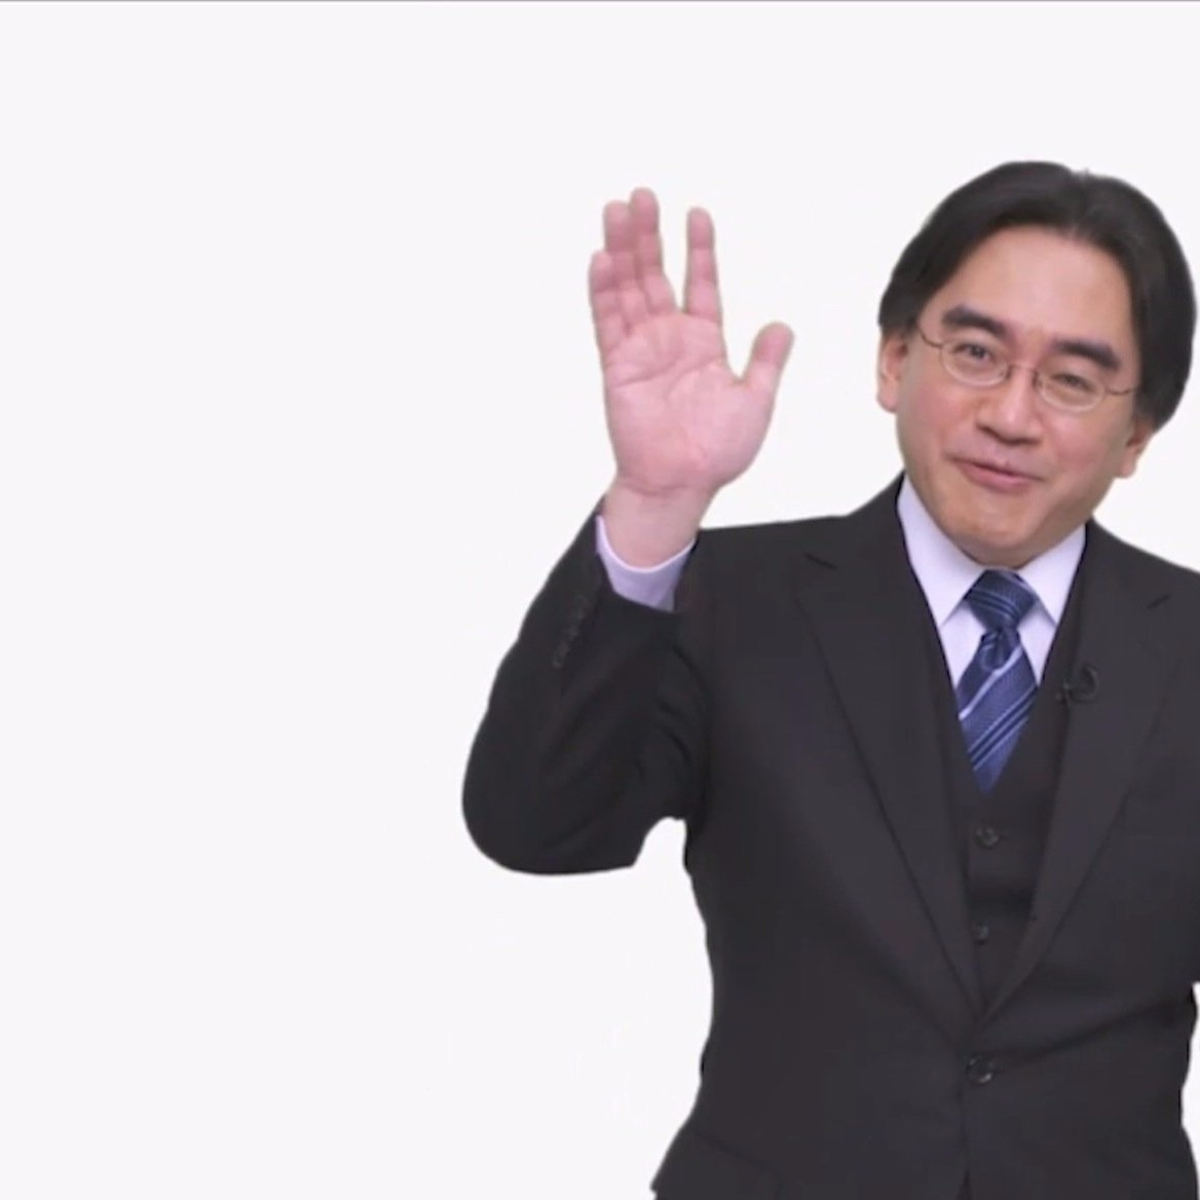 Obituary: Satoru Iwata